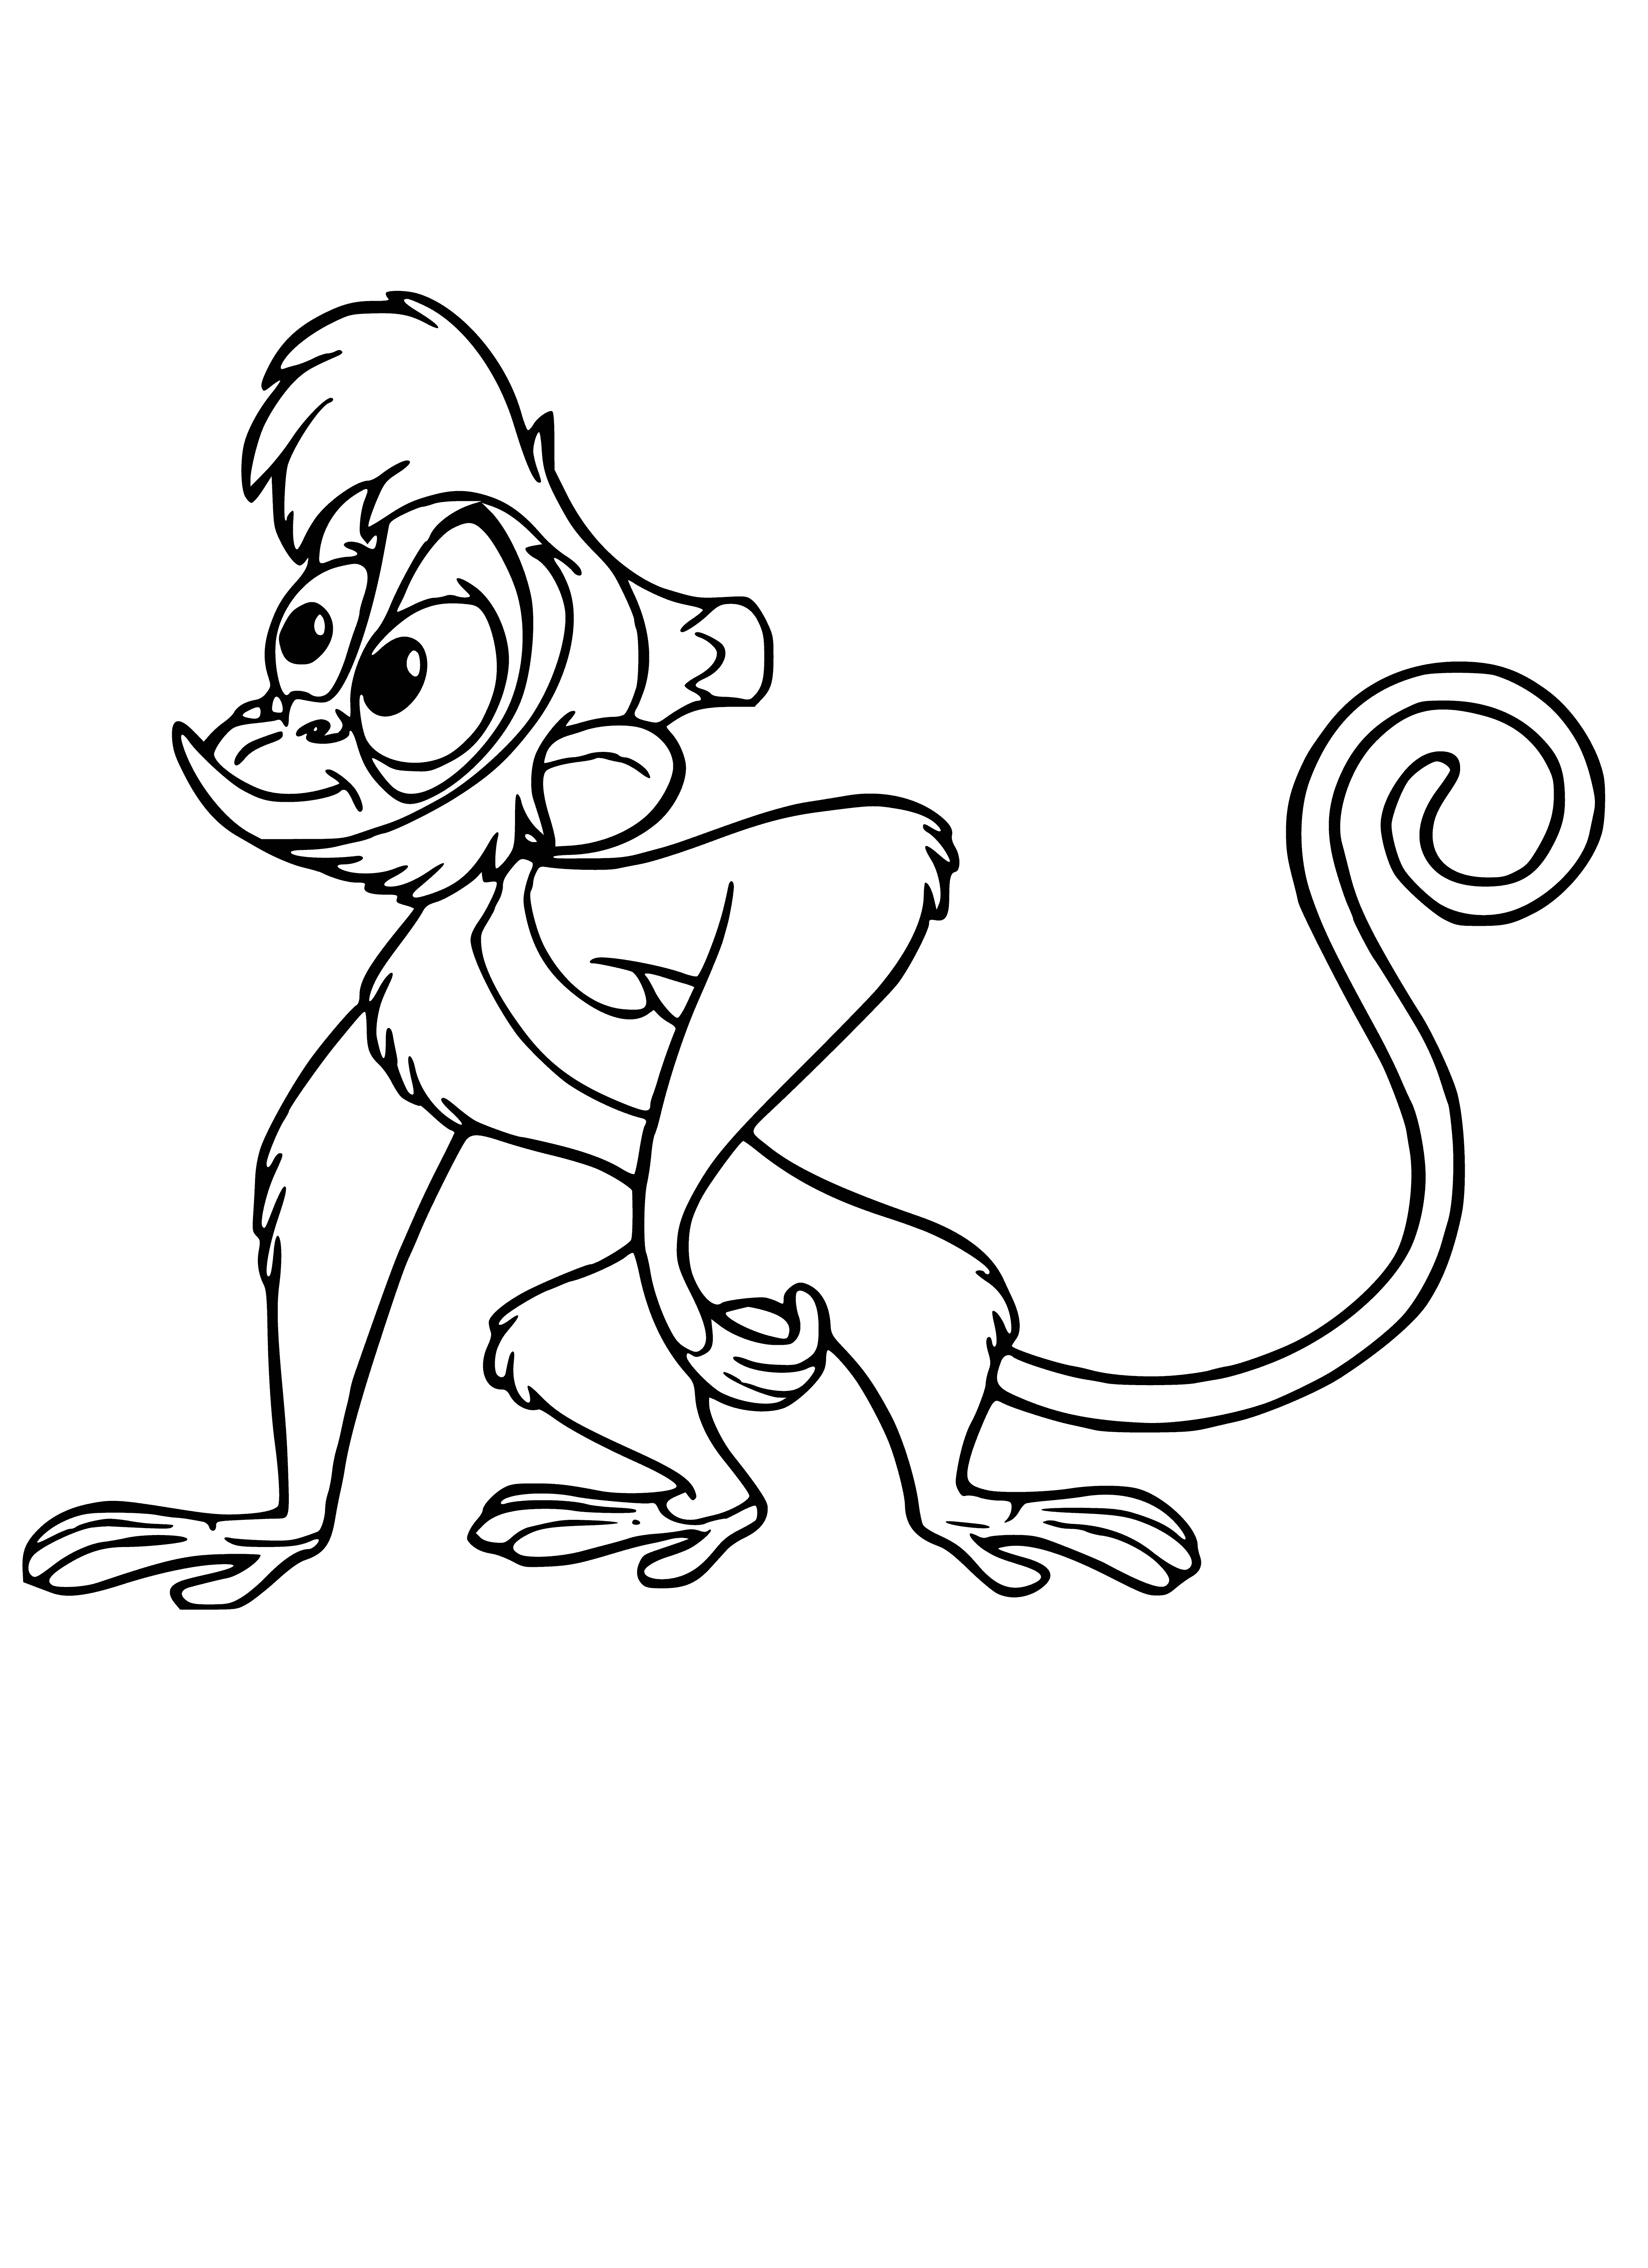 Monkey Abu coloring page